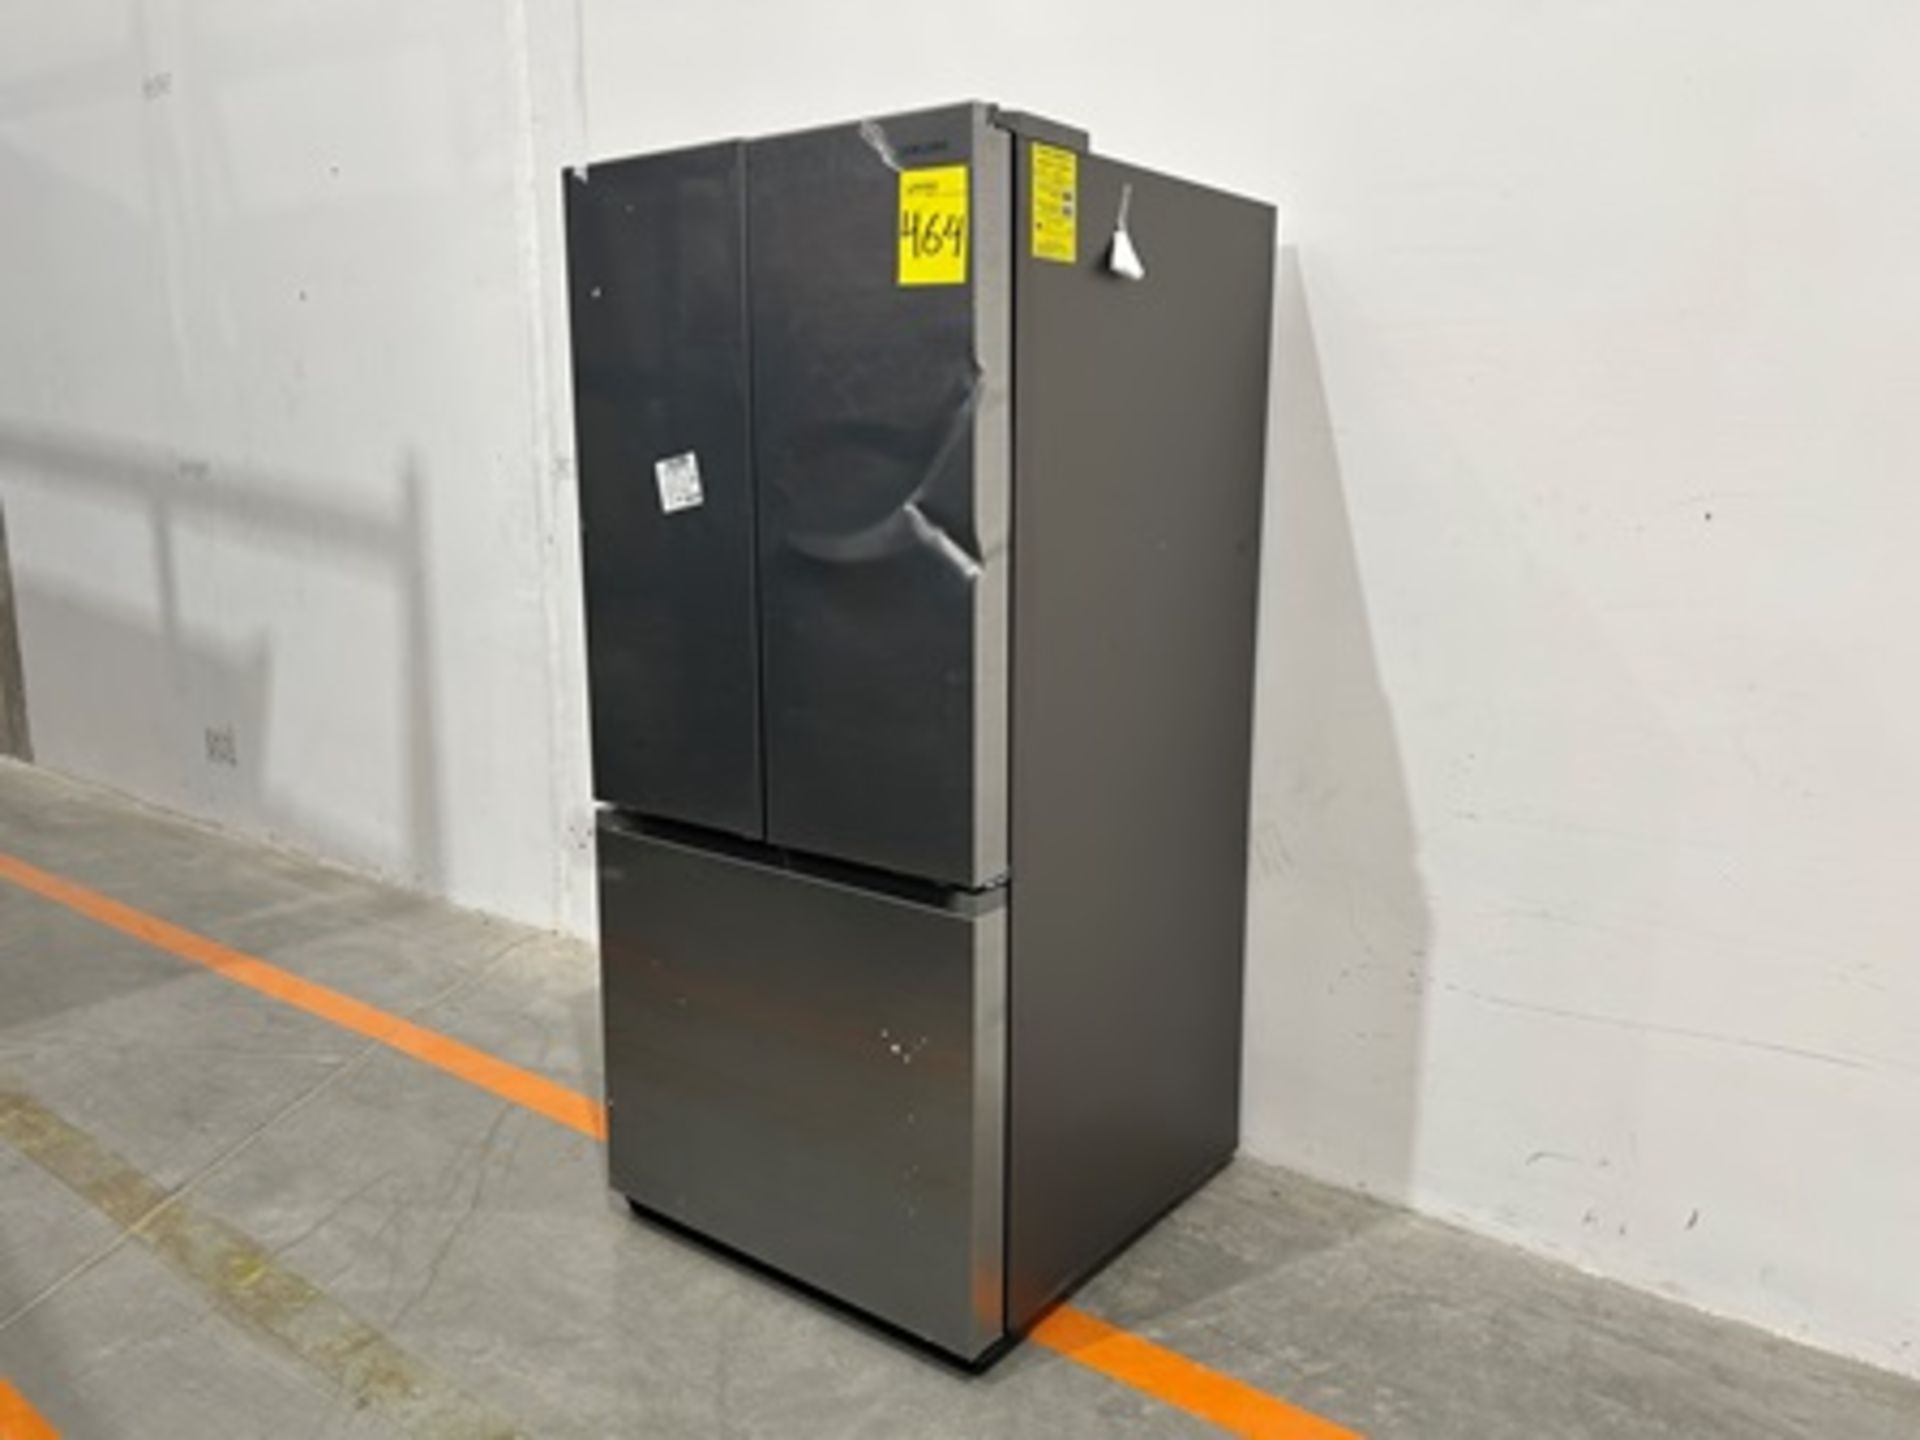 Refrigerador Marca SAMSUNG, Modelo RF25C5151S9, Serie 00679X, Color GRIS (equipo de devolución) - Image 3 of 5